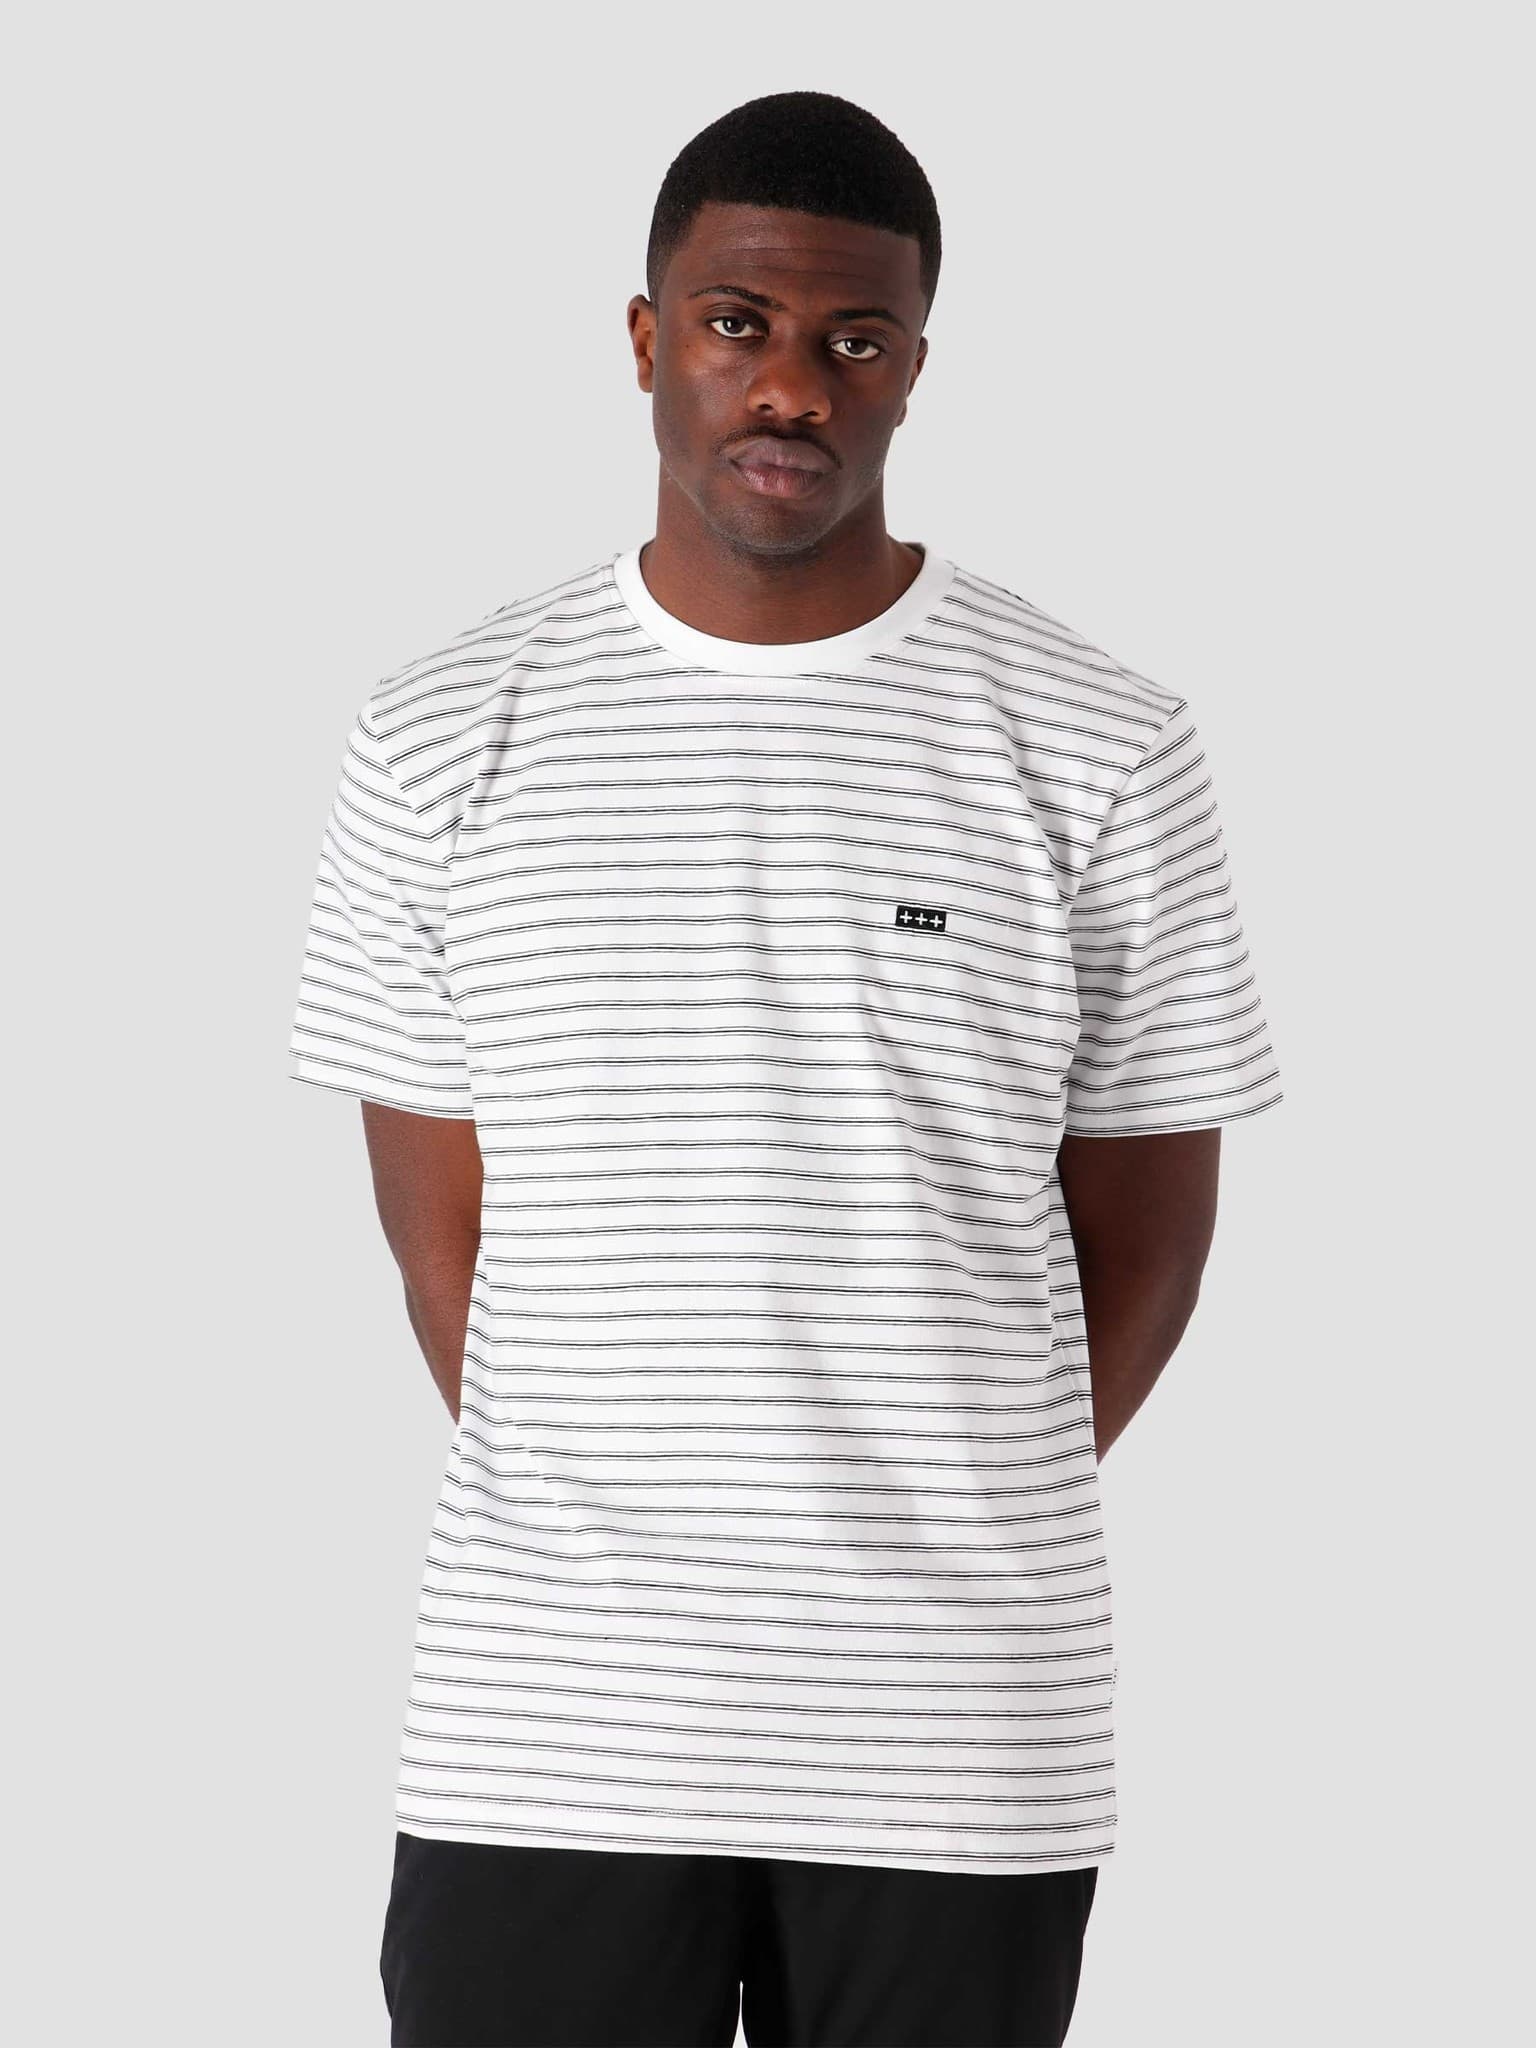 QB601 Stripe T-shirt White Navy